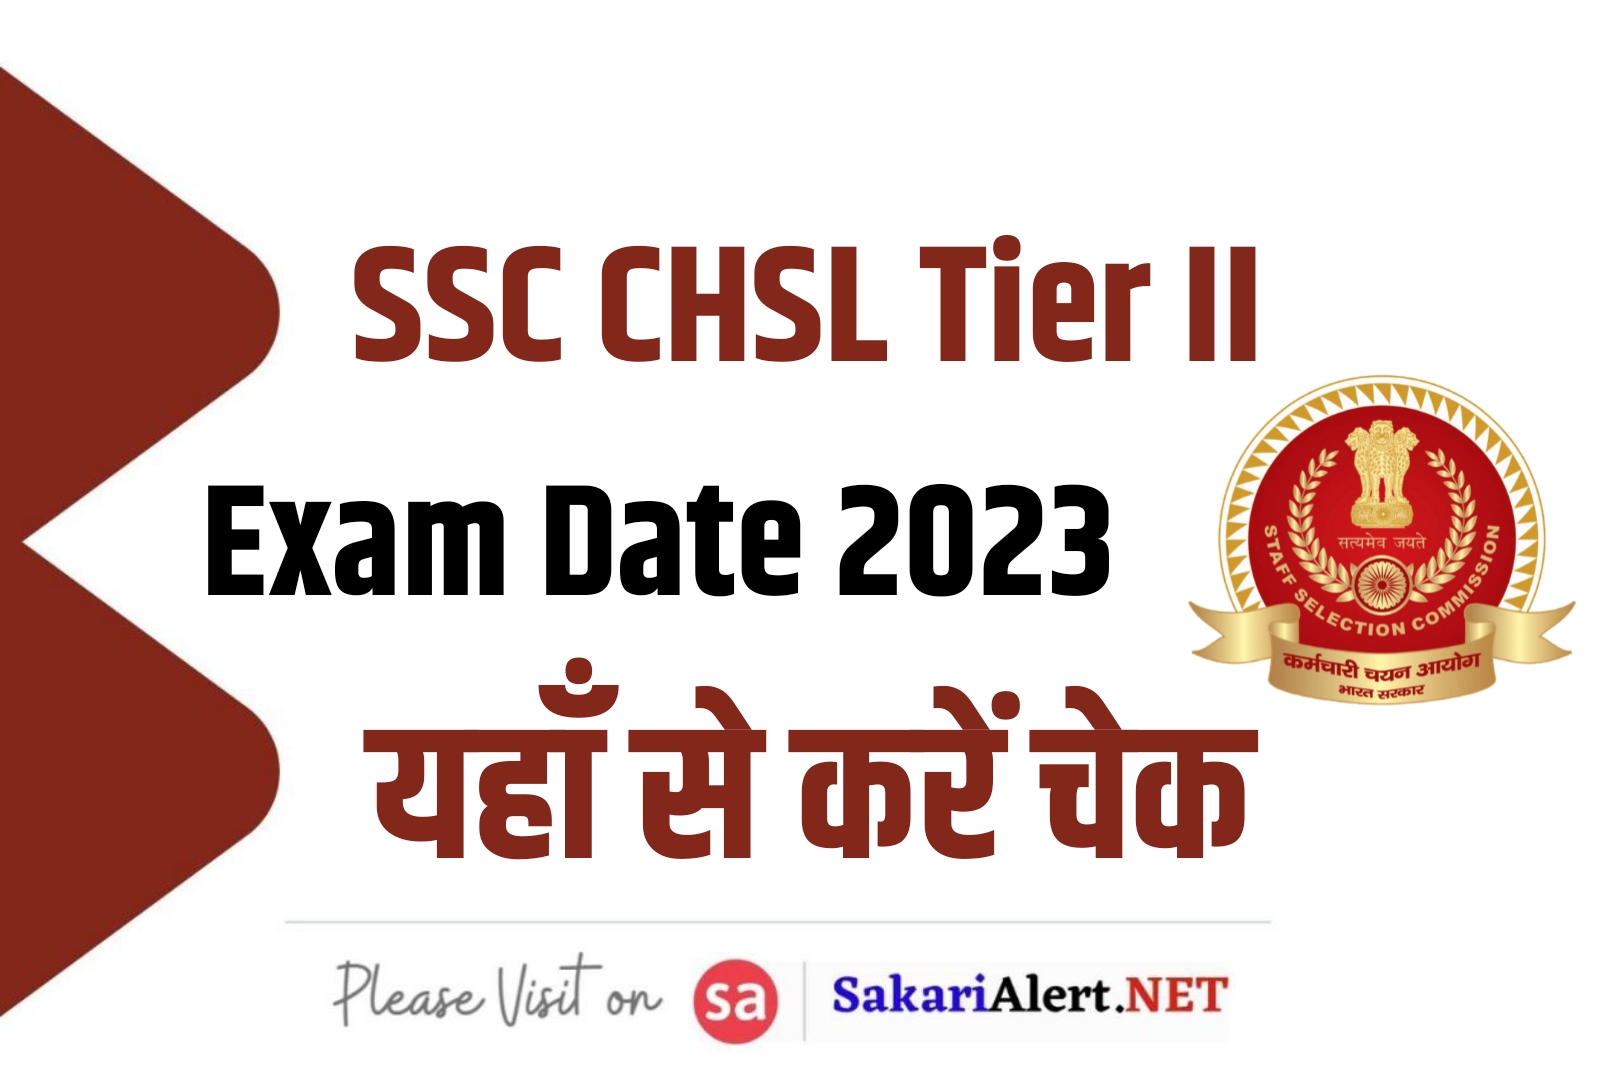 SSC CHSL Tier II Exam Date 2023 | एसएससी सीएचएसएल परीक्षा तिथि